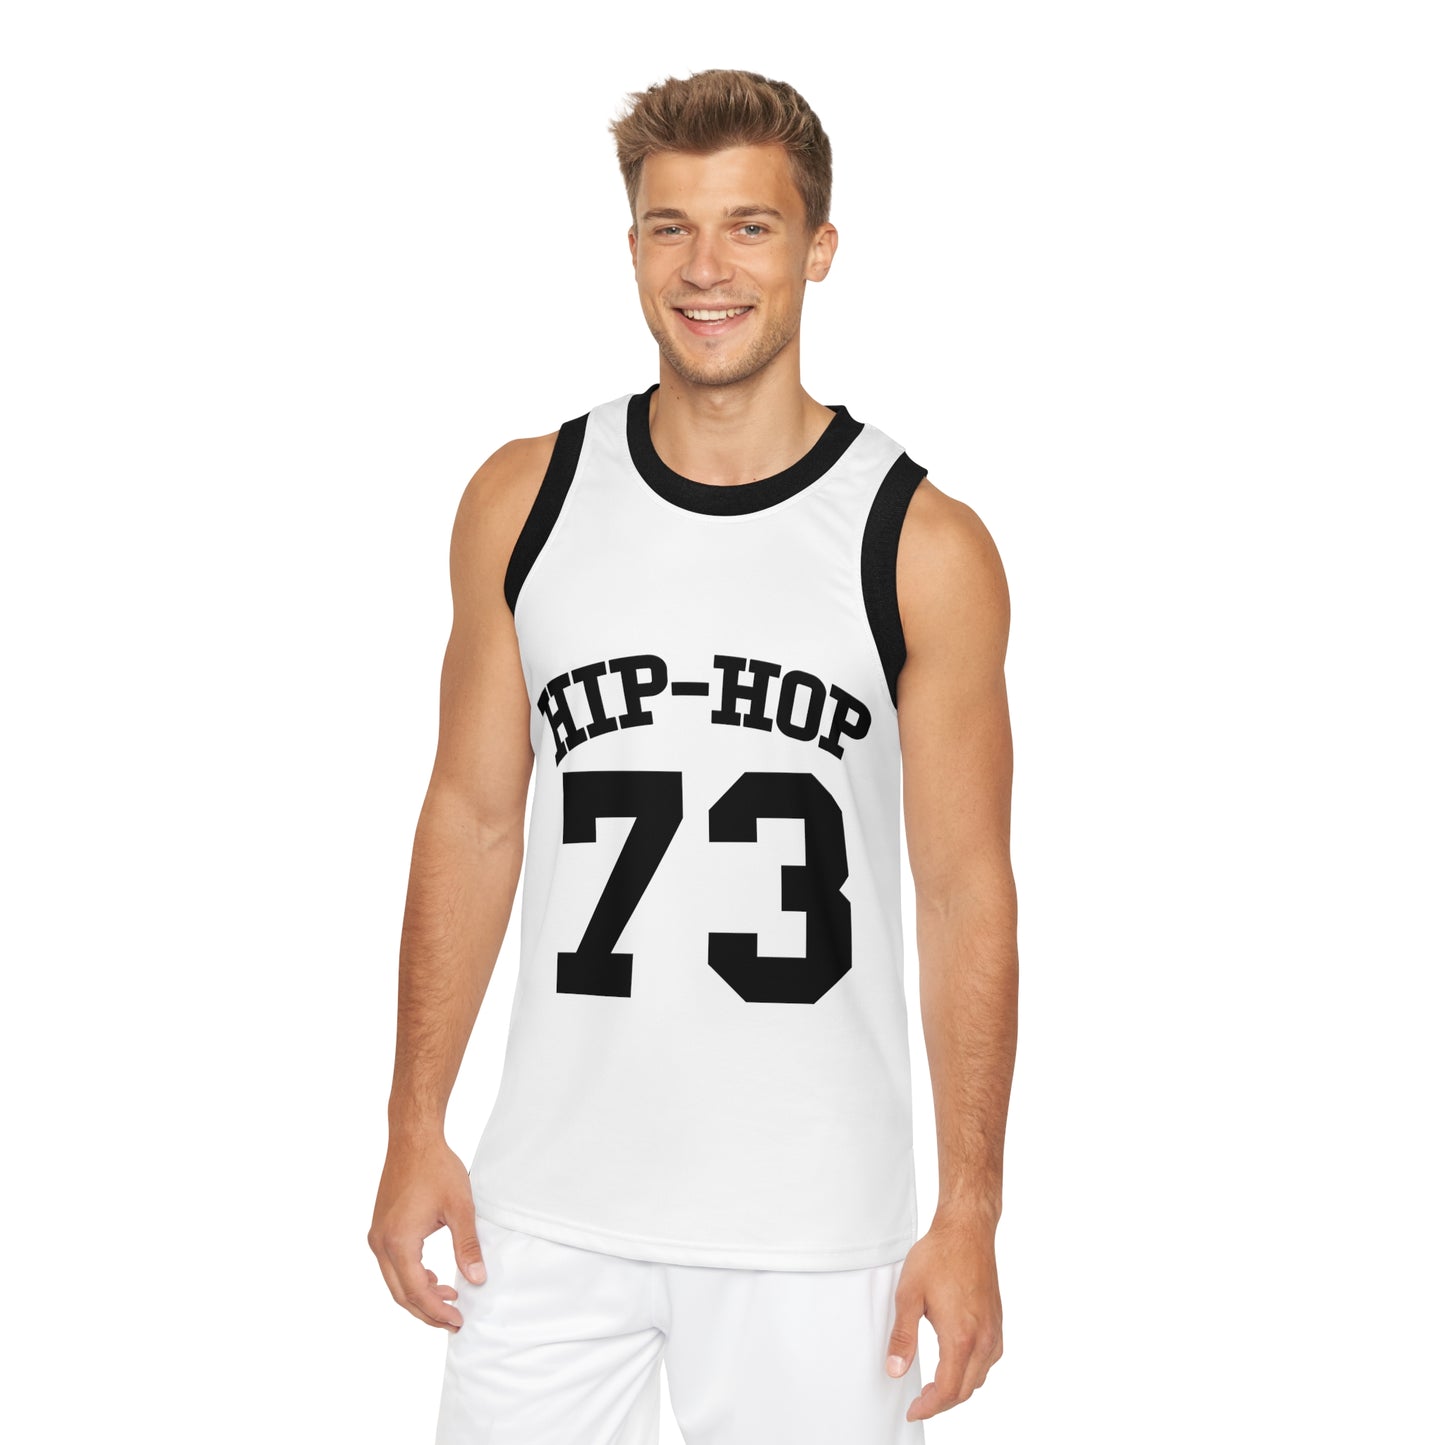 Hip-Hop Basketball Jersey, Hip-Hop 1973 Jersey, Rap Music Jersey, Hip Hop 50th Jersey, Hip-Hop Anniversary Jersey, Rap Culture Jersey